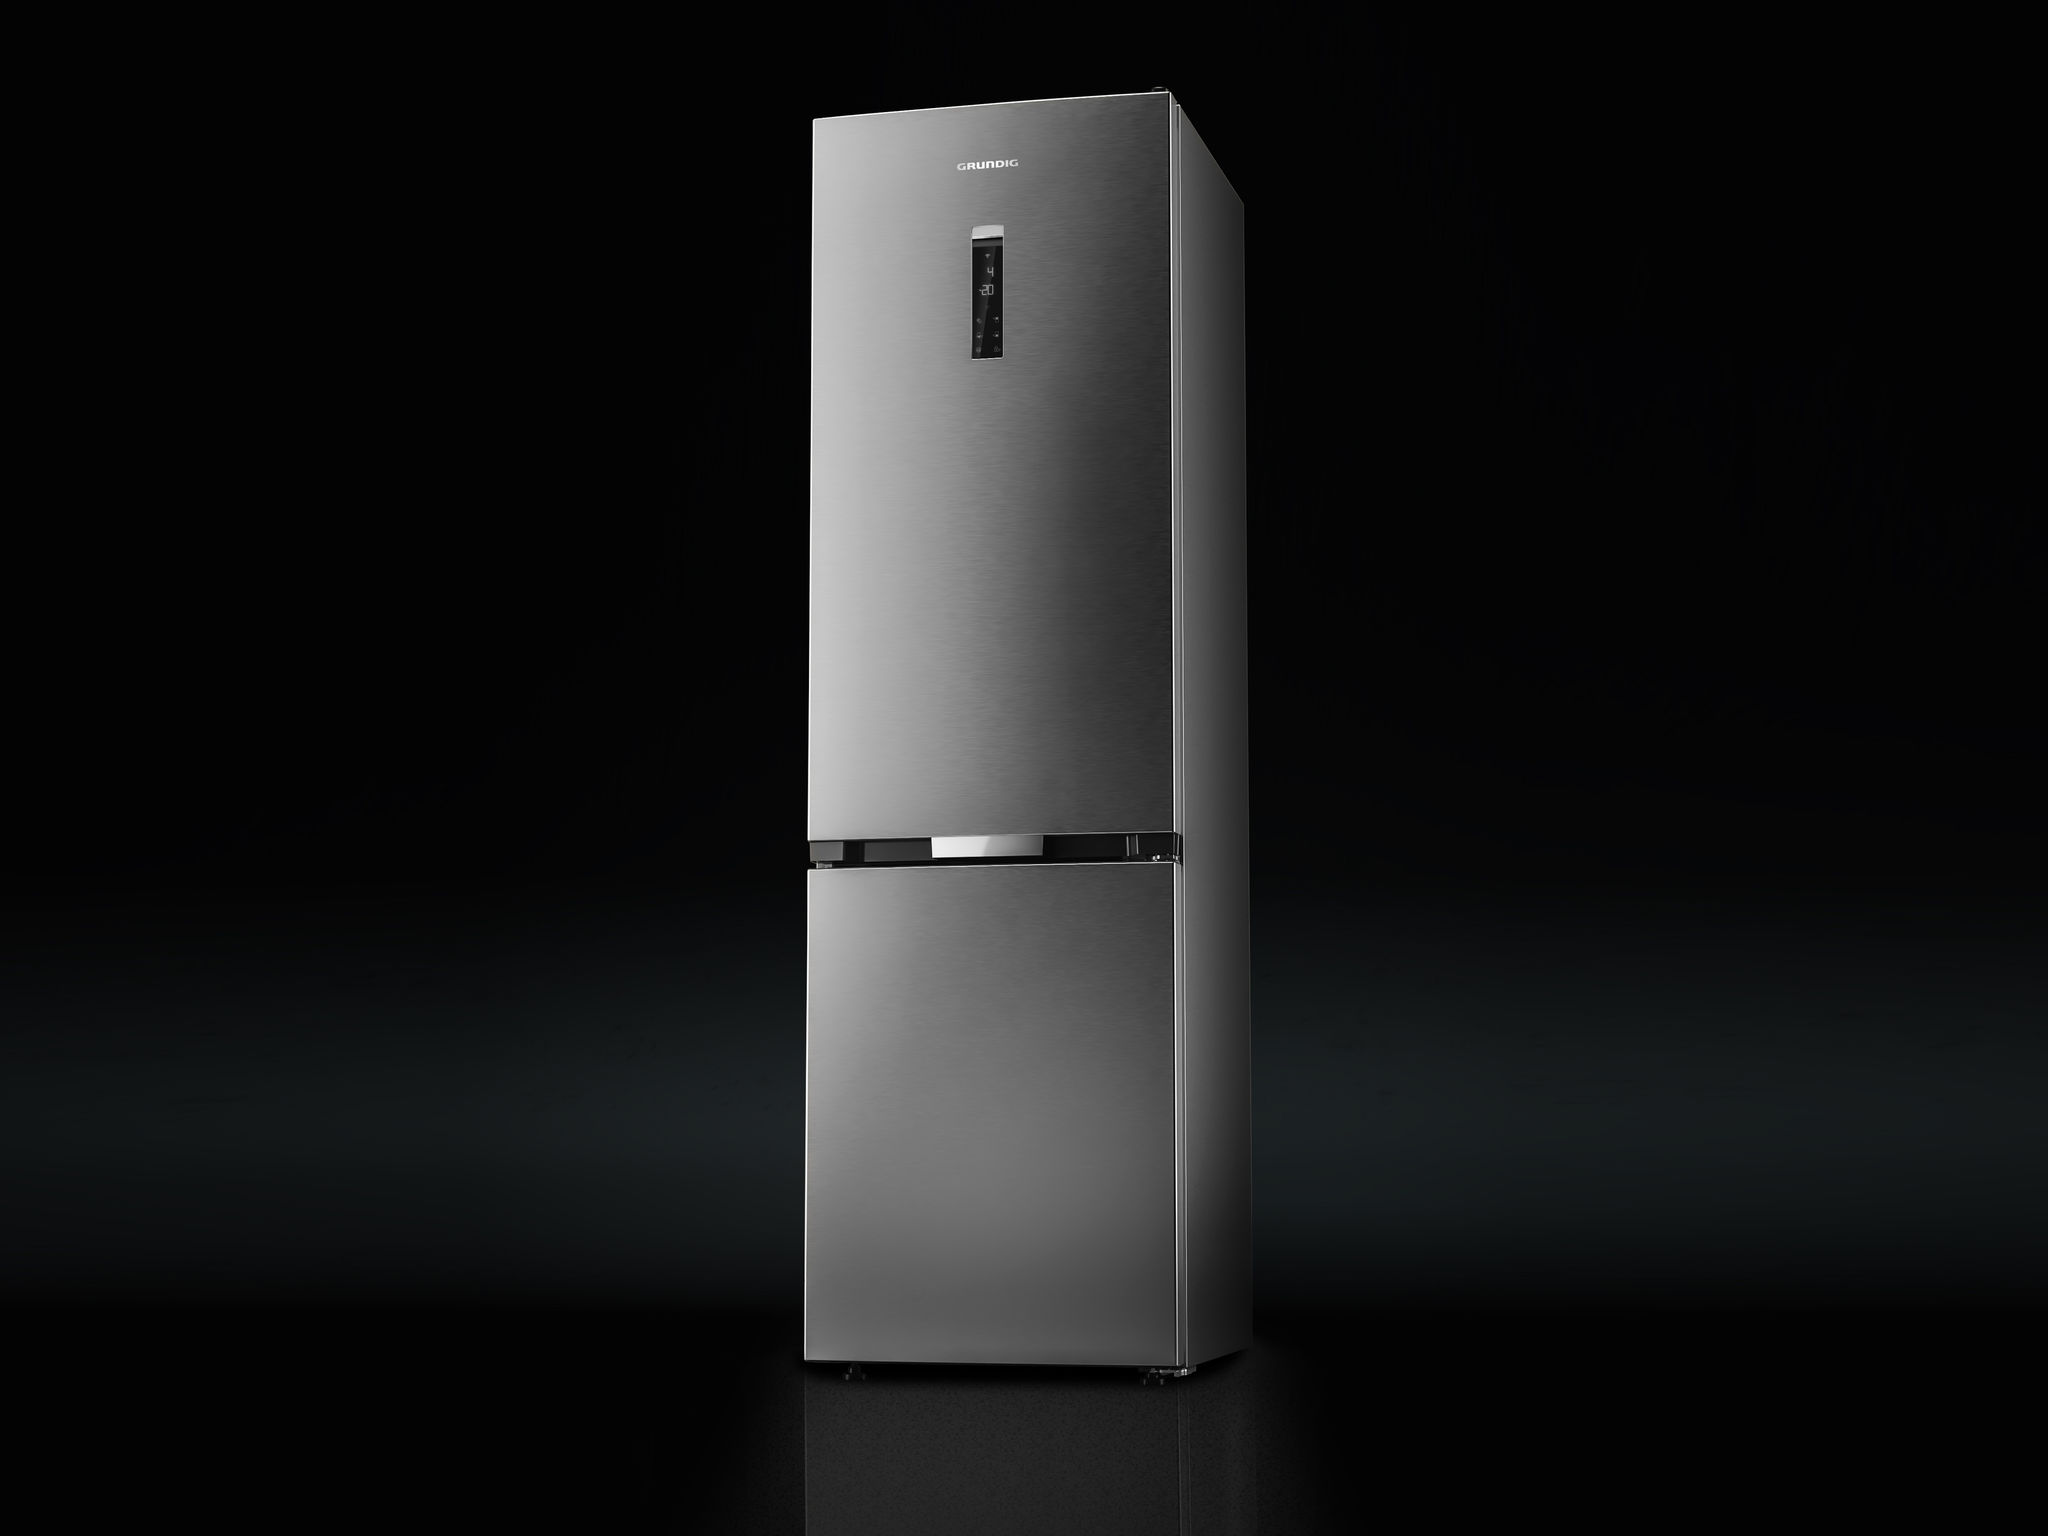 Grundig GR 7700 Refrigerator